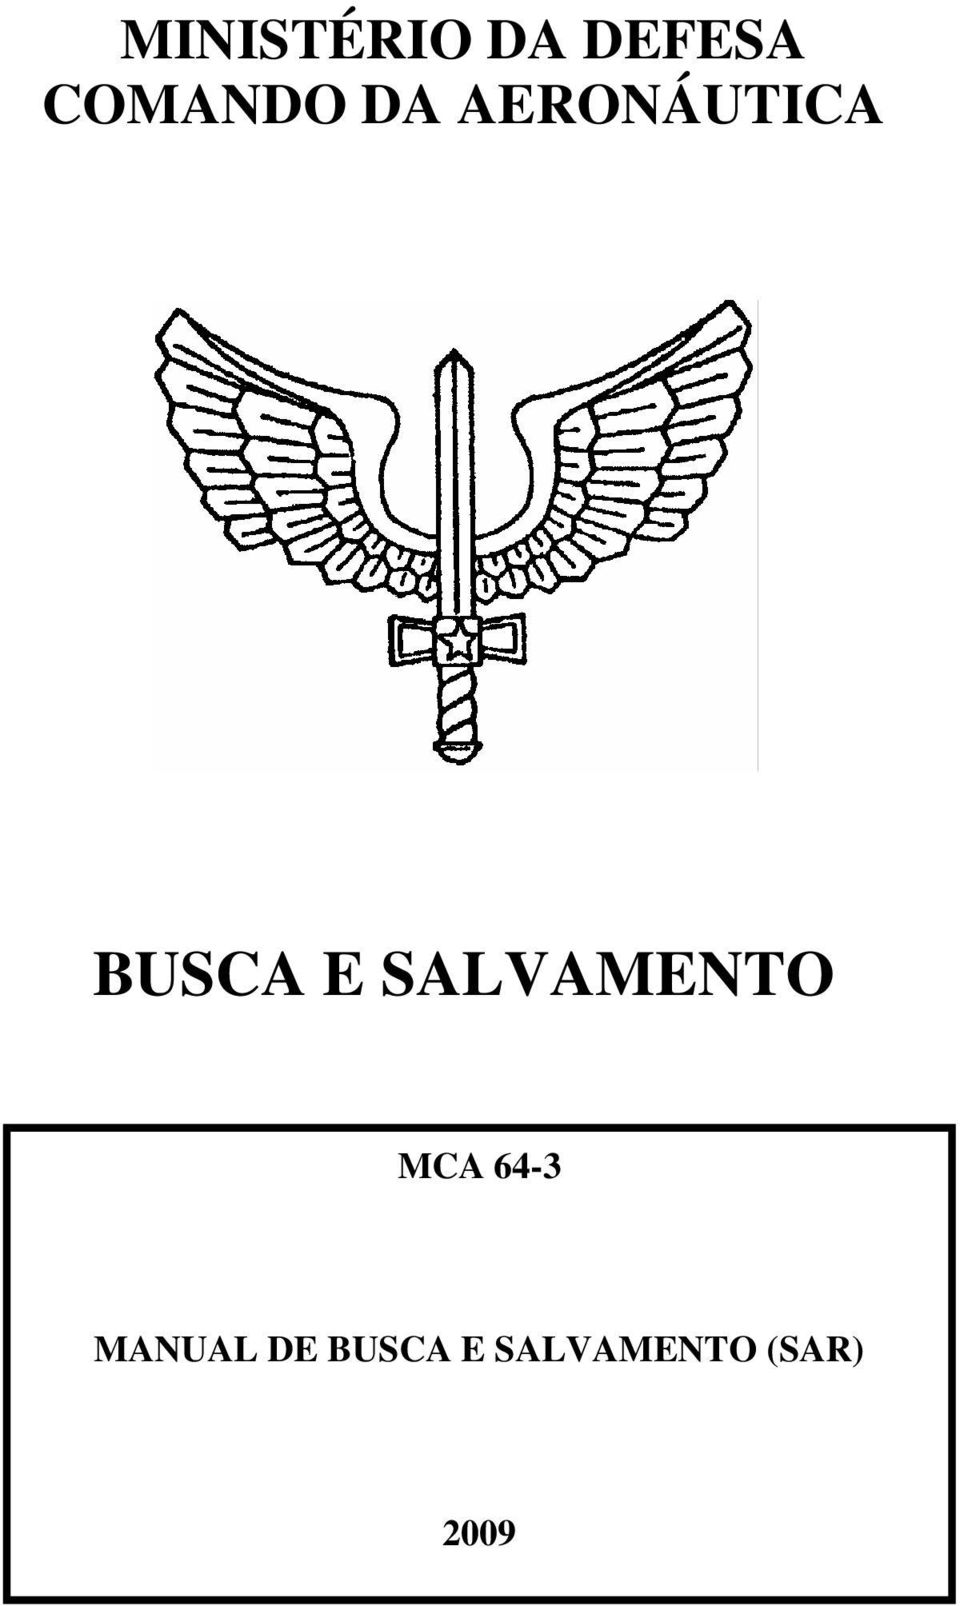 BUSCA E SALVAMENTO MCA 64-3